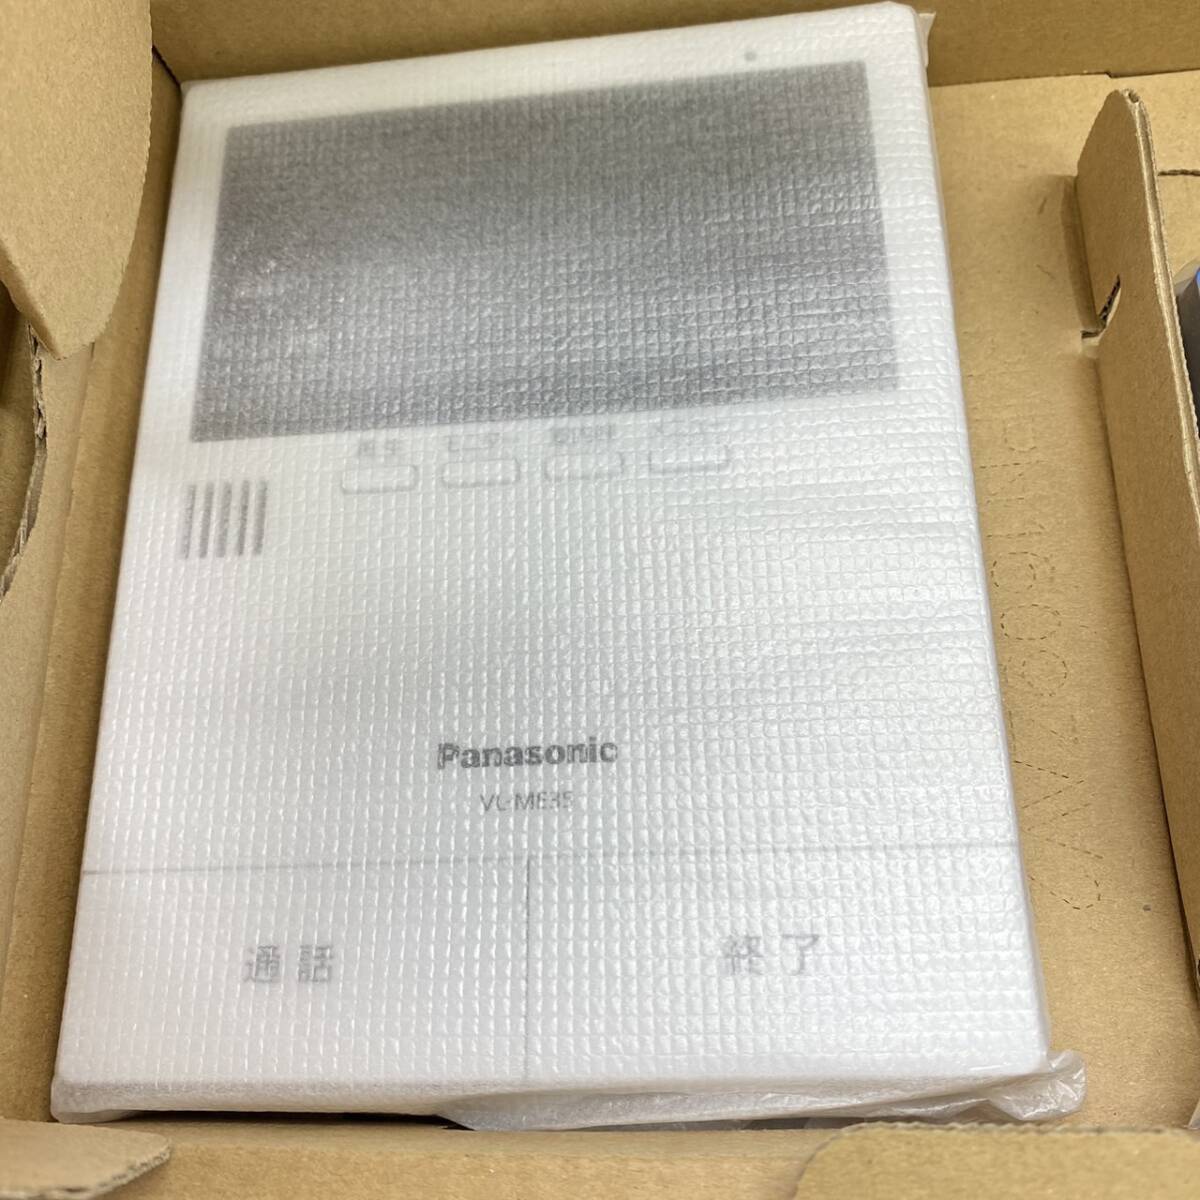 送料無料g30037 Panasonic パナソニック VL-SE35XLA テレビドアホン 電源直結 録画 録音機能付き 防災 セキュリティ インターホン ドアホン_画像3